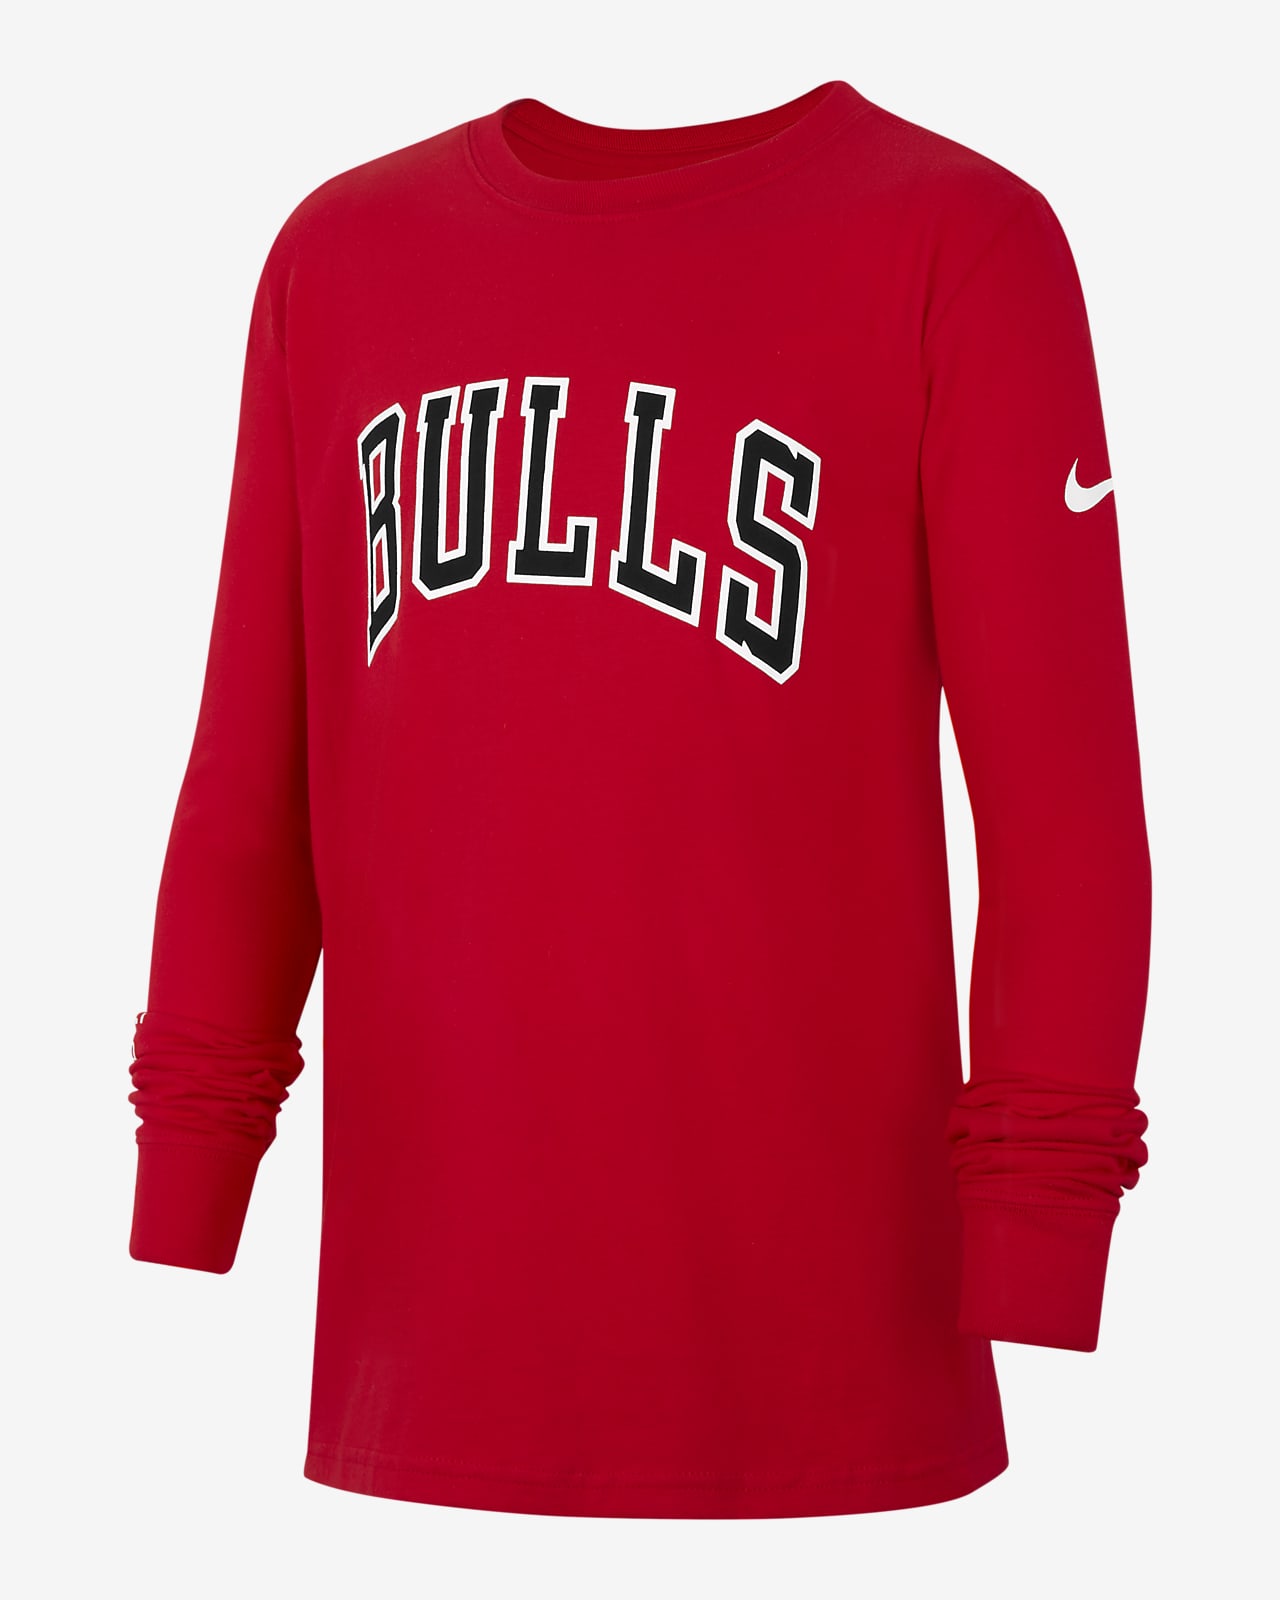 Chicago Bulls. Camisetas y equipaciones. Nike ES